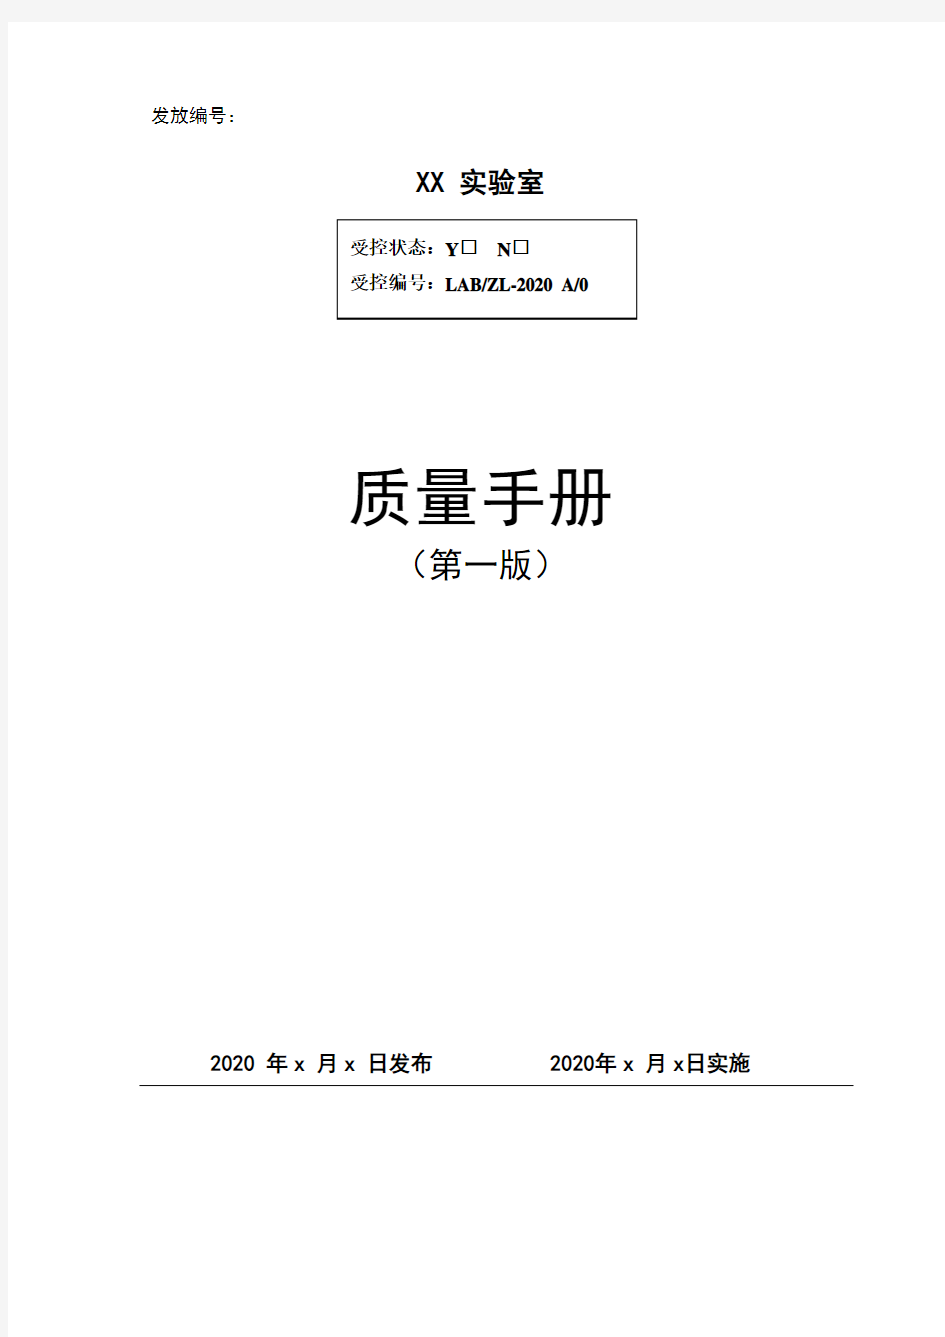 ISO 9001：2015版全套体系文件 xx公司实验室质量手册(依据CNASCL012018编制)(新版)